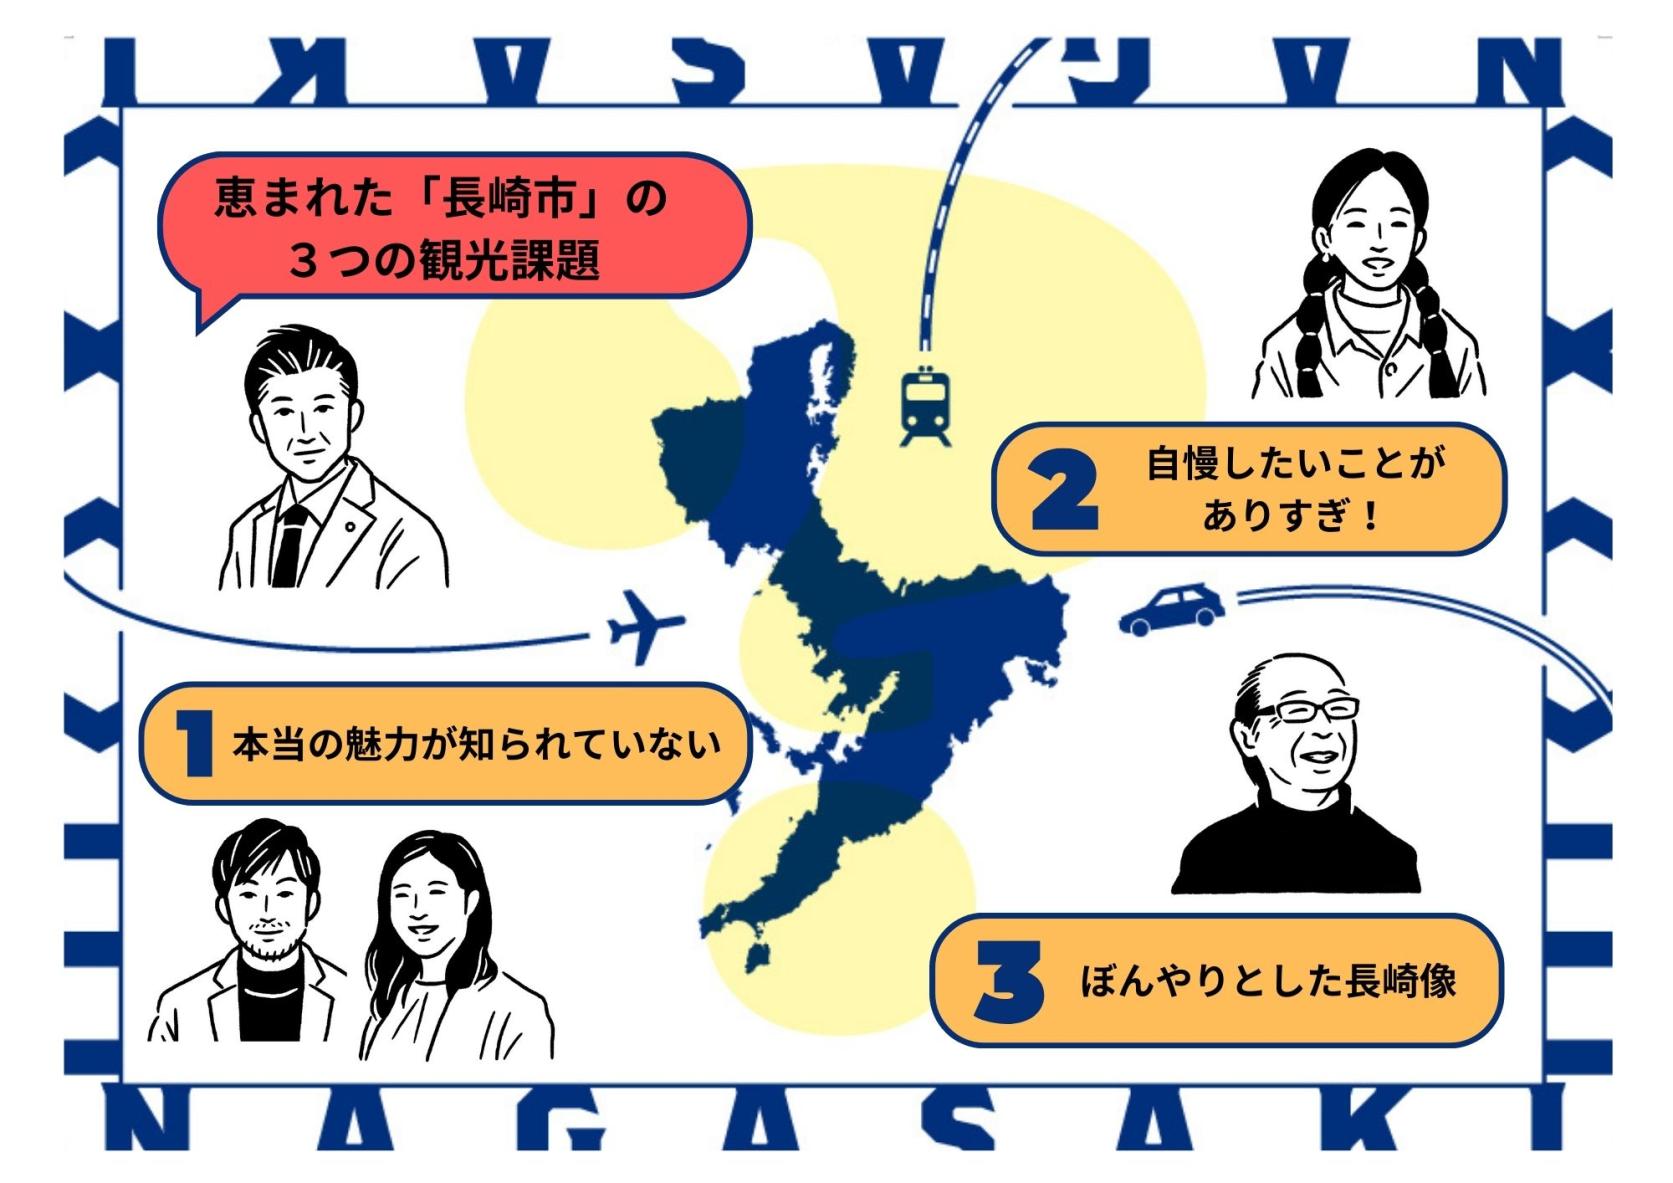 長崎市が抱える「３つの観光課題」をズバッと解決
そもそも、長崎市観光マスターブランドの構築の意味ってナンだっけ？-0